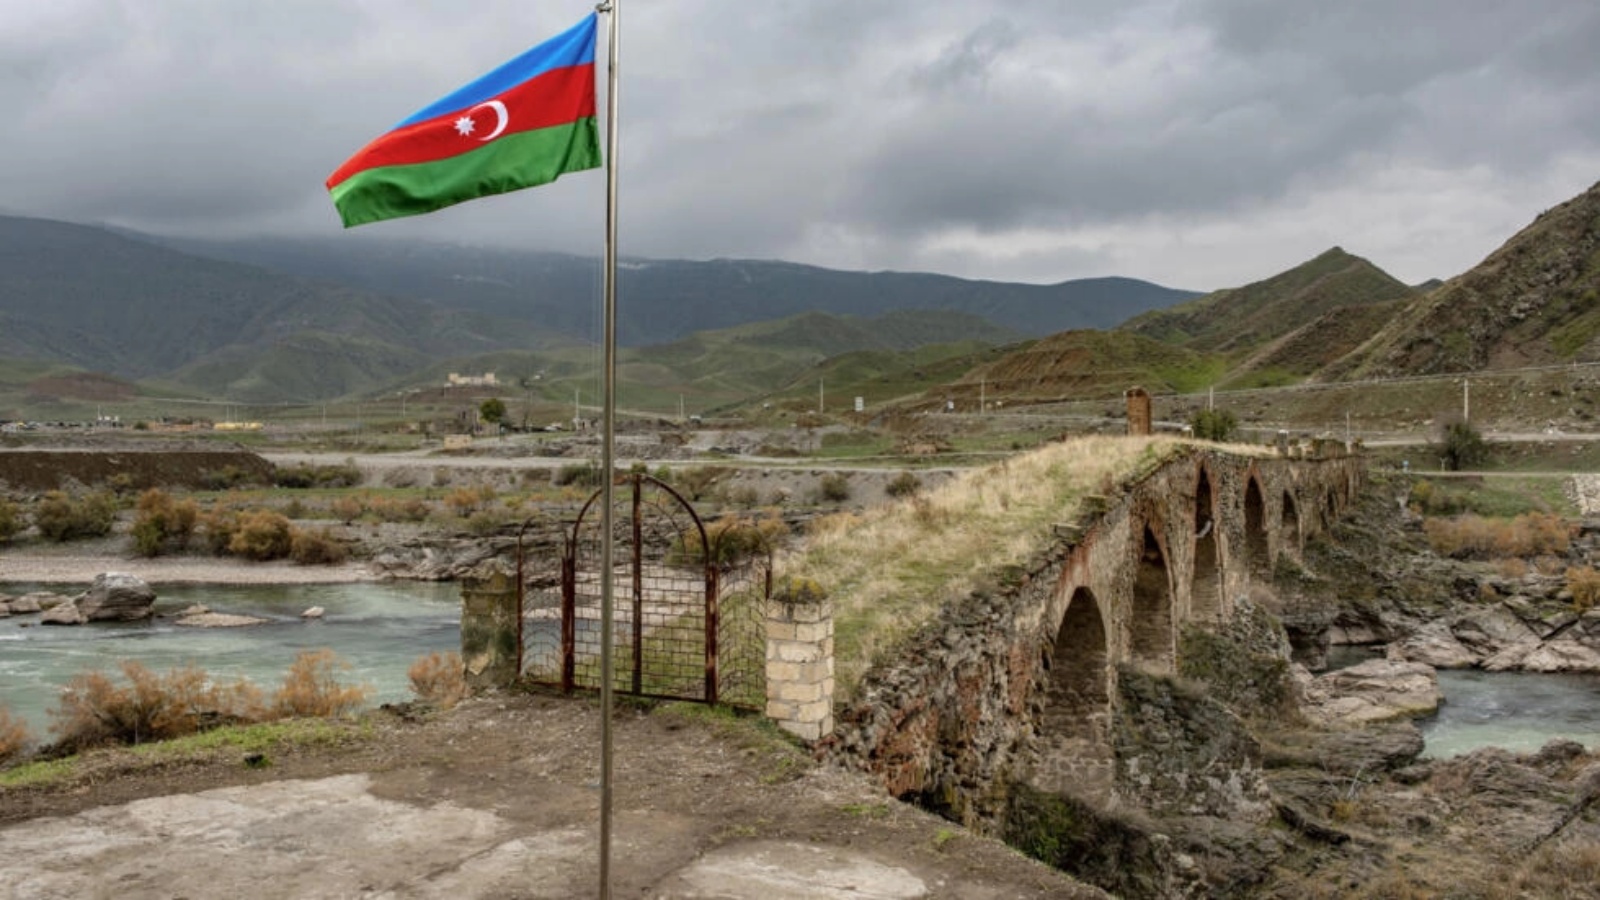 العلم الأذربيجاني في منطقة حدودية مع إيران بتاريخ 9 ديسمبر 2020 